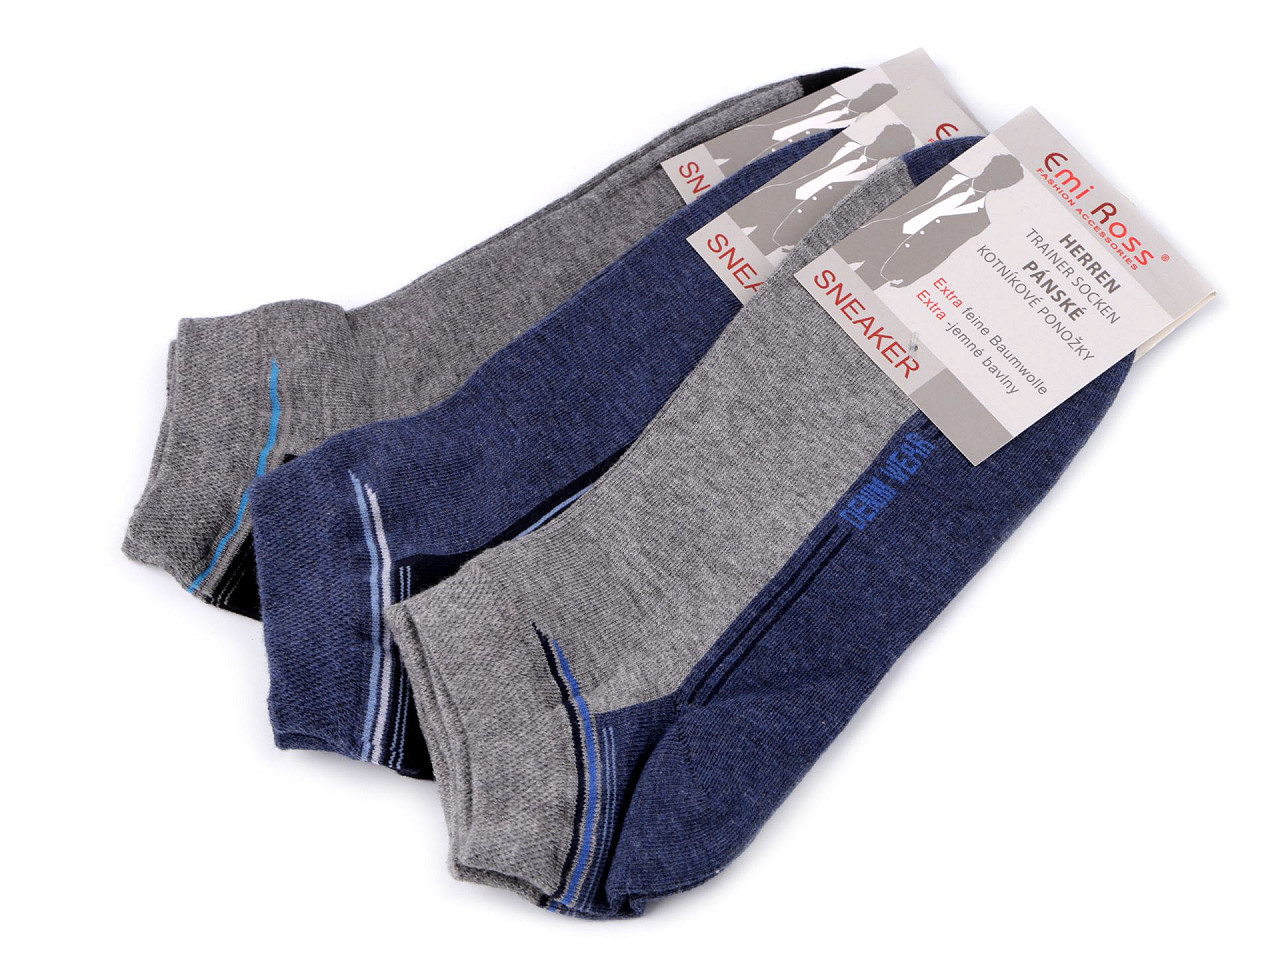 Pánské bavlněné ponožky kotníkové, barva 9 (vel. 39-42) mix